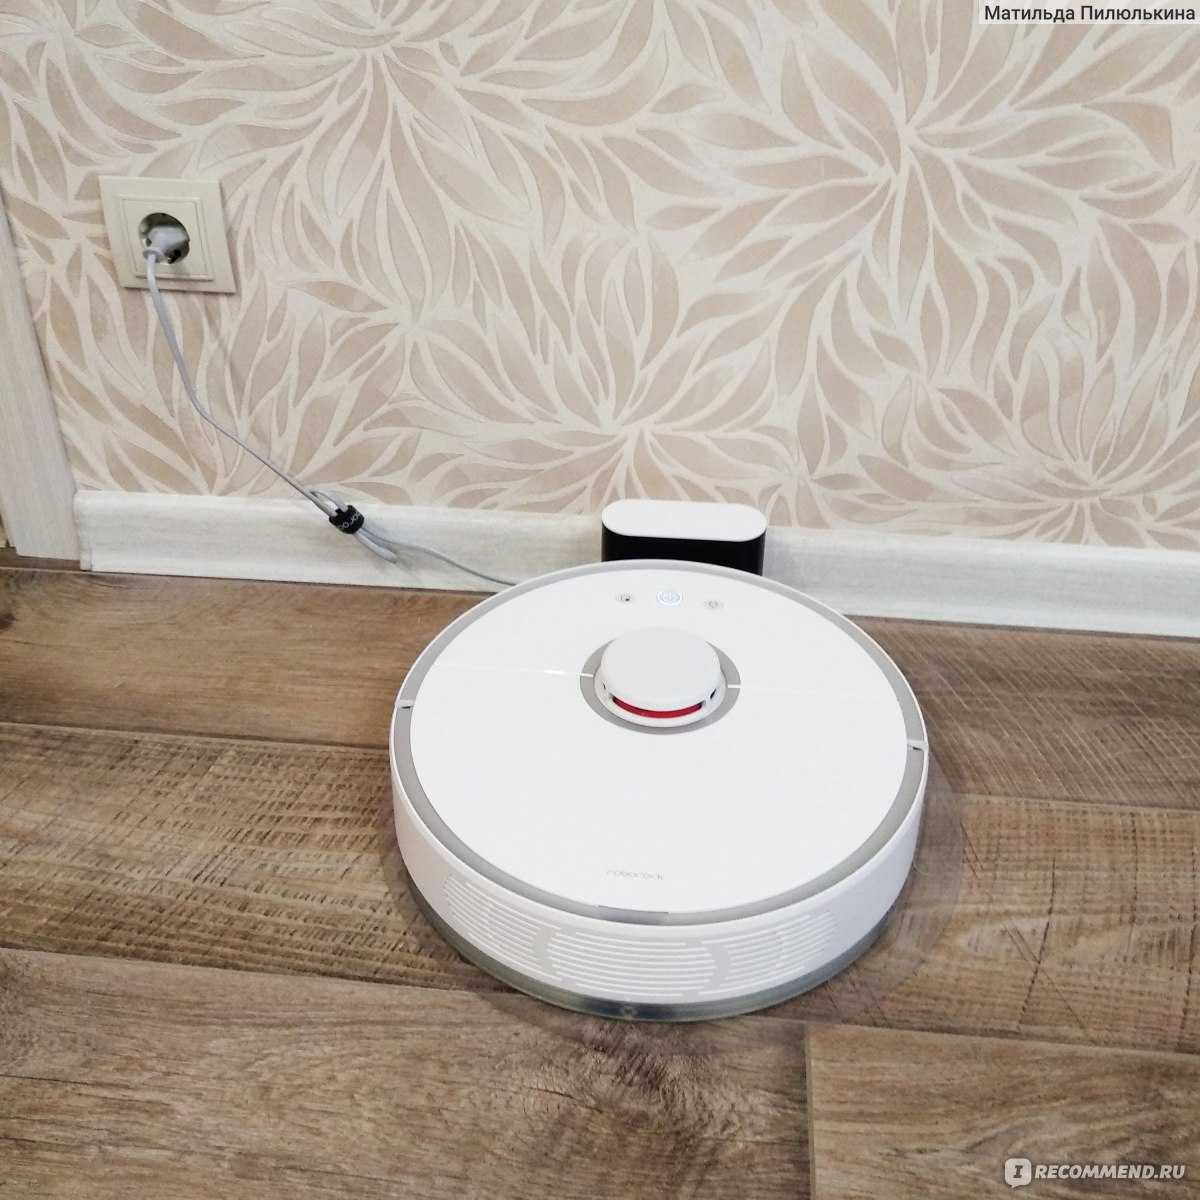 Обзор робота-пылесоса xiaomi mi robot vacuum-mop: космически чисто! / умные вещи